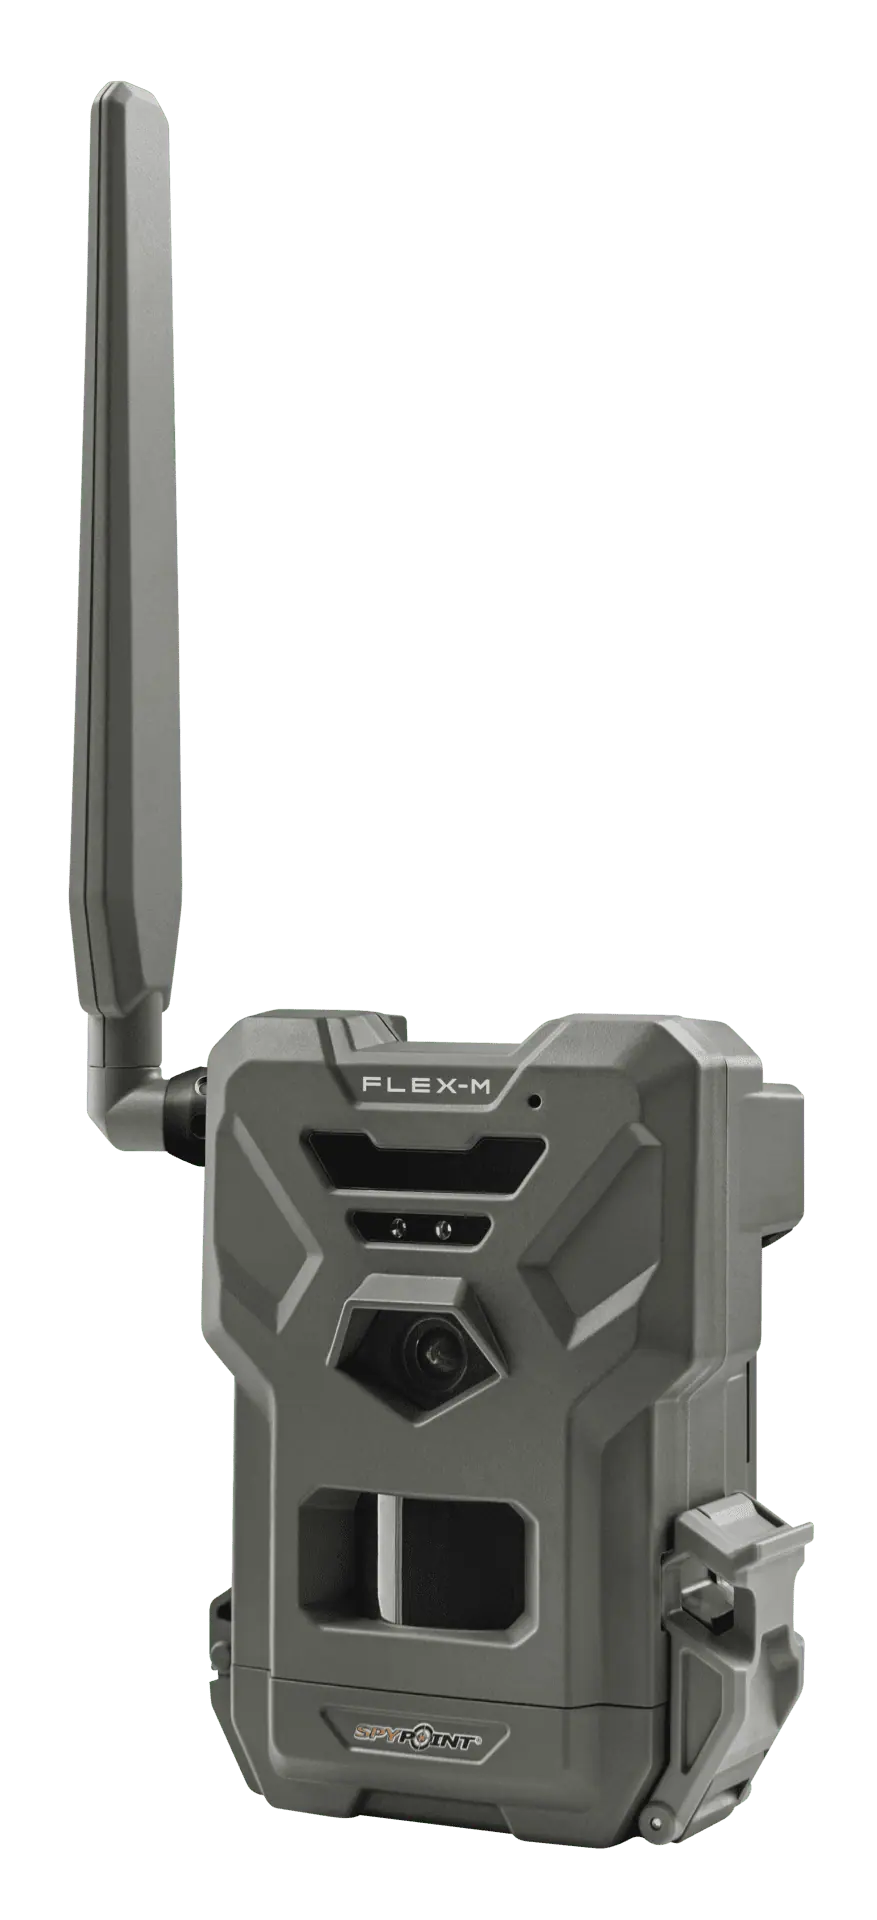 Spypoint Wildkamera FLEX-M